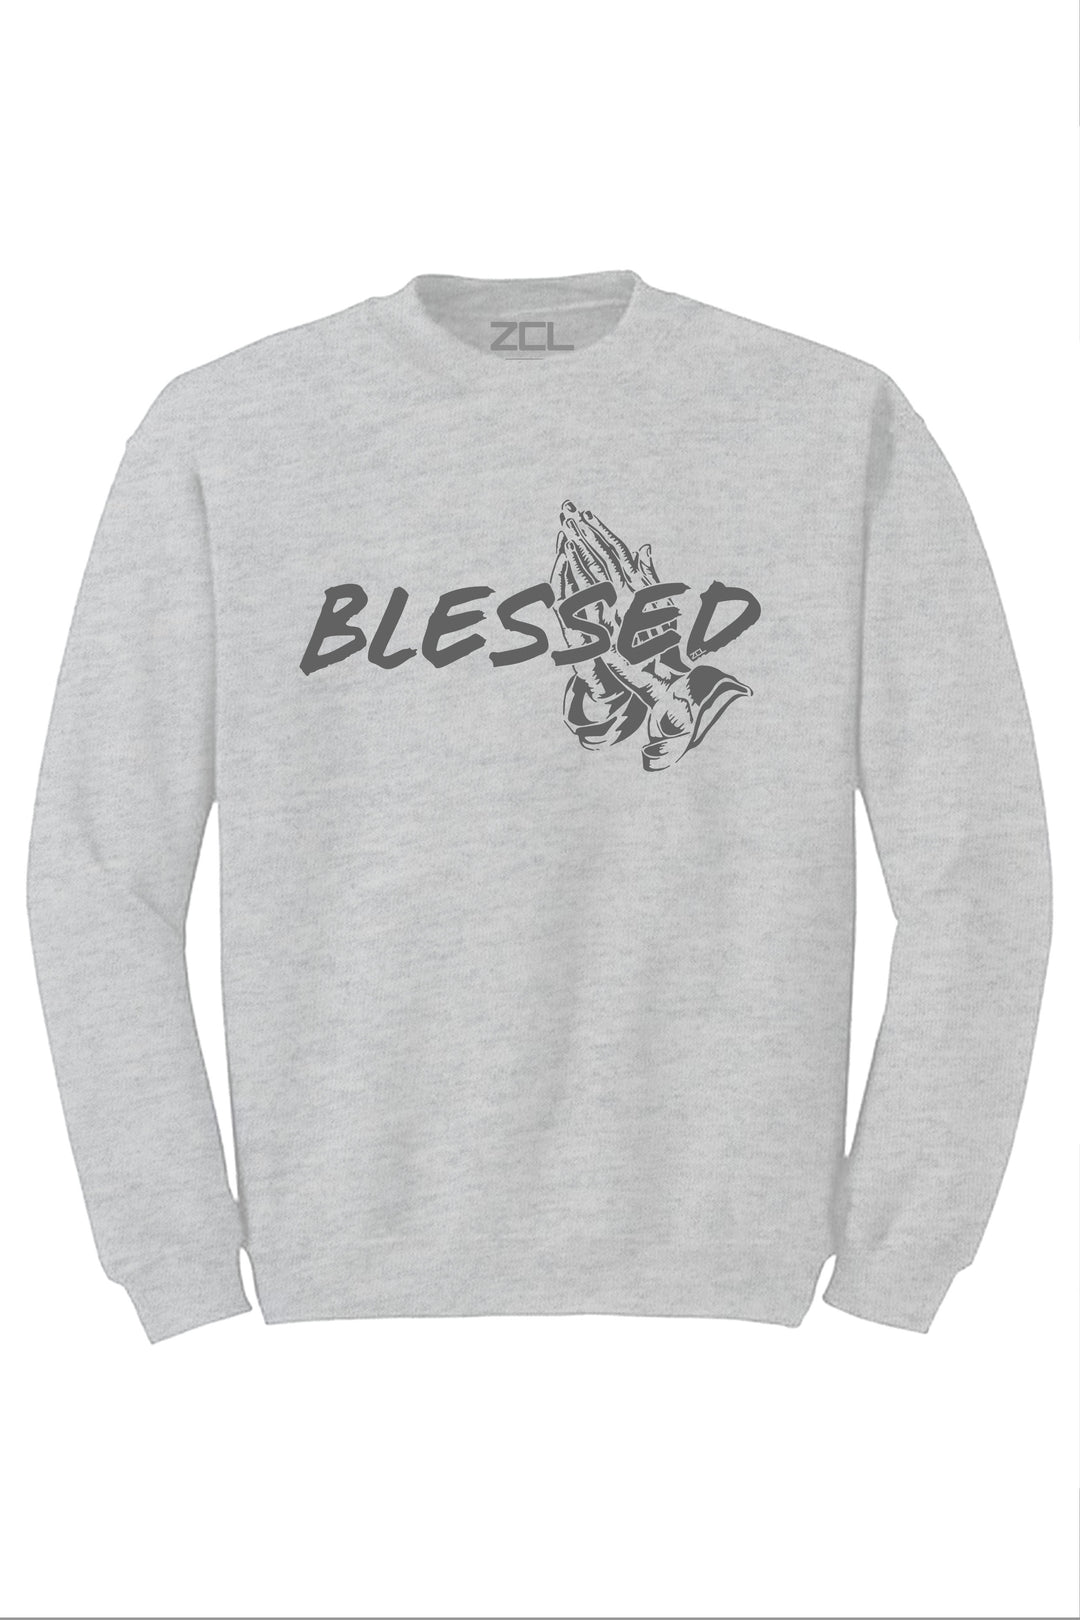 Blessed Crewneck Sweatshirt (Grey Logo) - Zamage